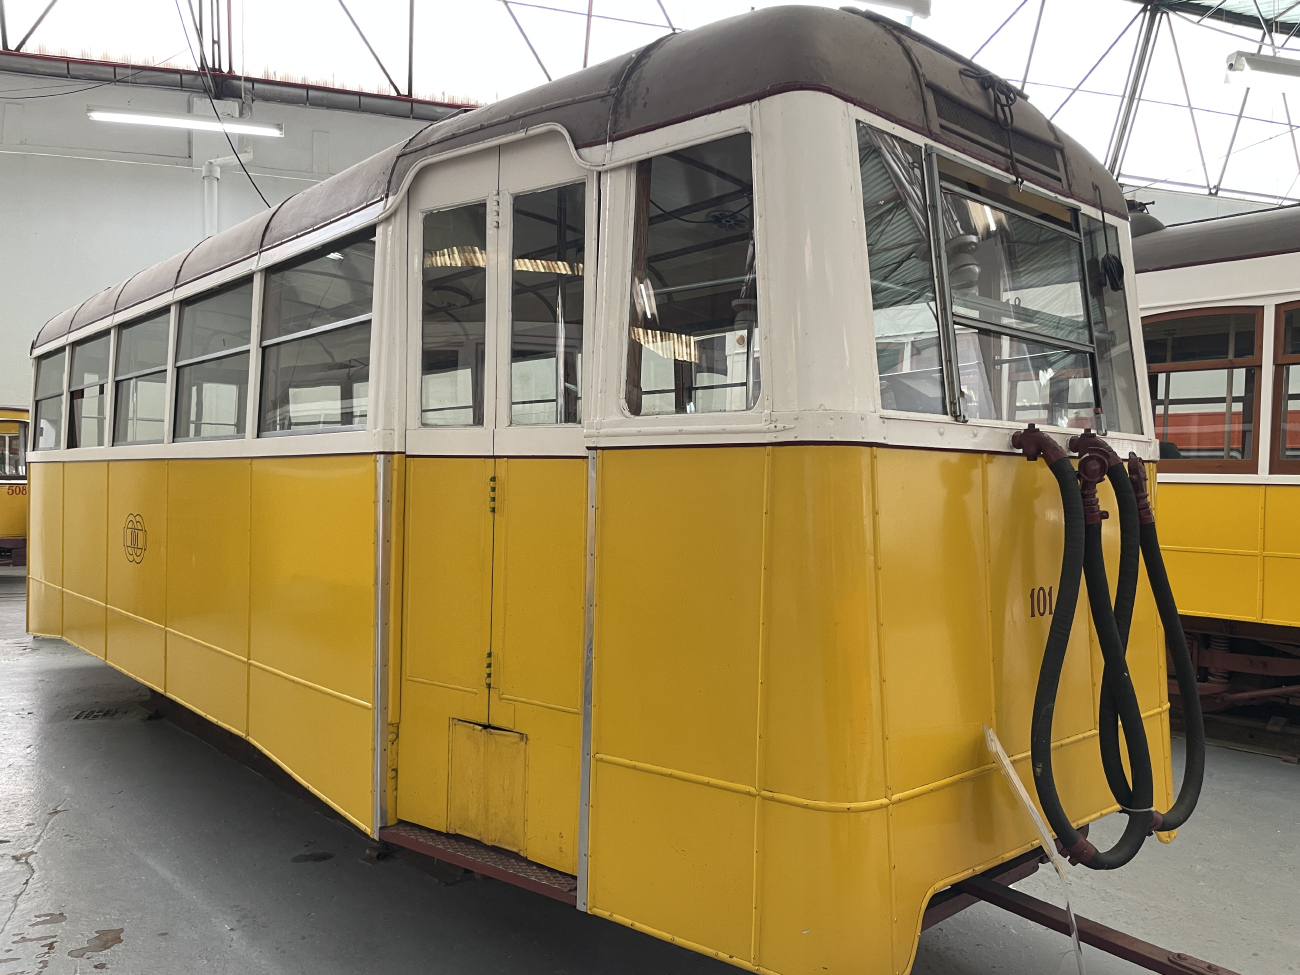 Lisbonne, Carris 2-axle trailer (Ligeiro) N°. 101; Lisbonne — Tram — Museu da Carris